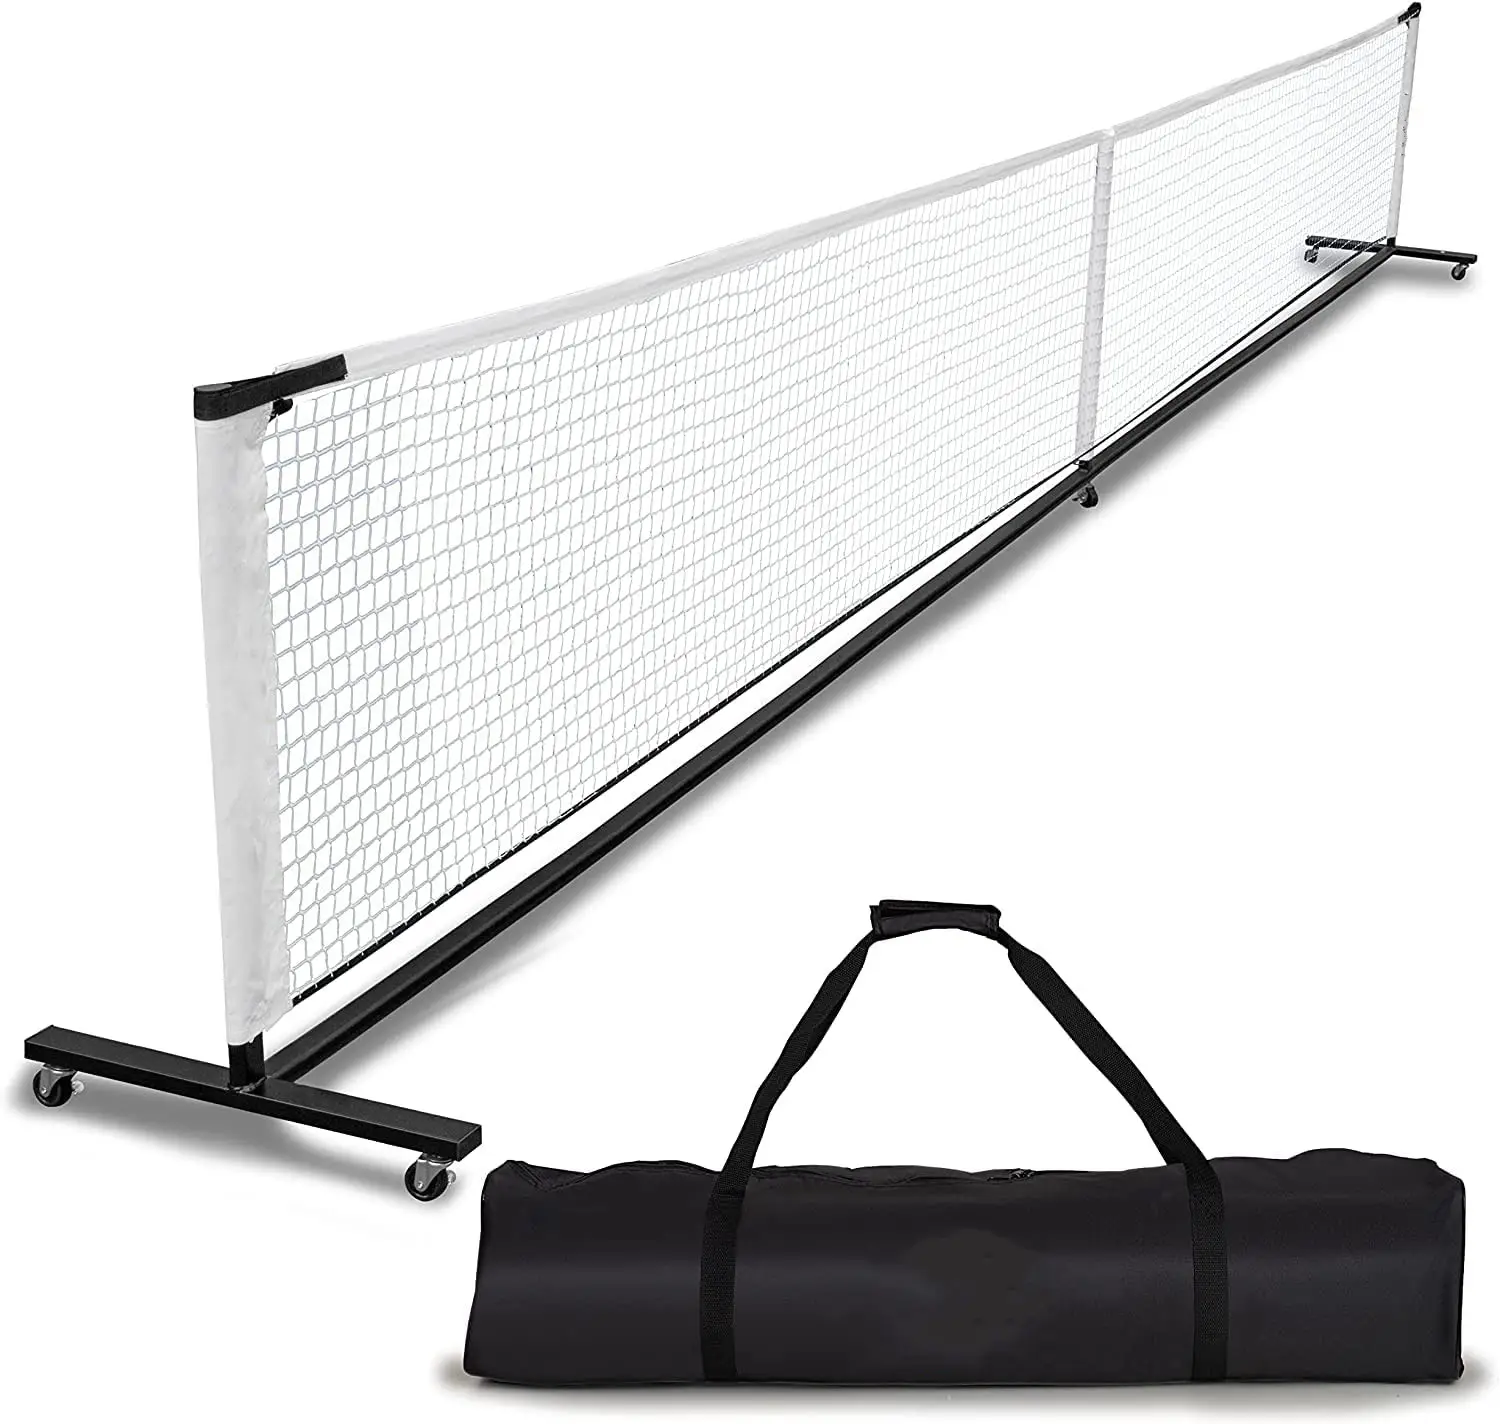 Ruota universale, struttura mobile in metallo stabile con rete in Nylon resistente e borsa per il trasporto, rete portatile per Pickleball, Tennis, Badminton